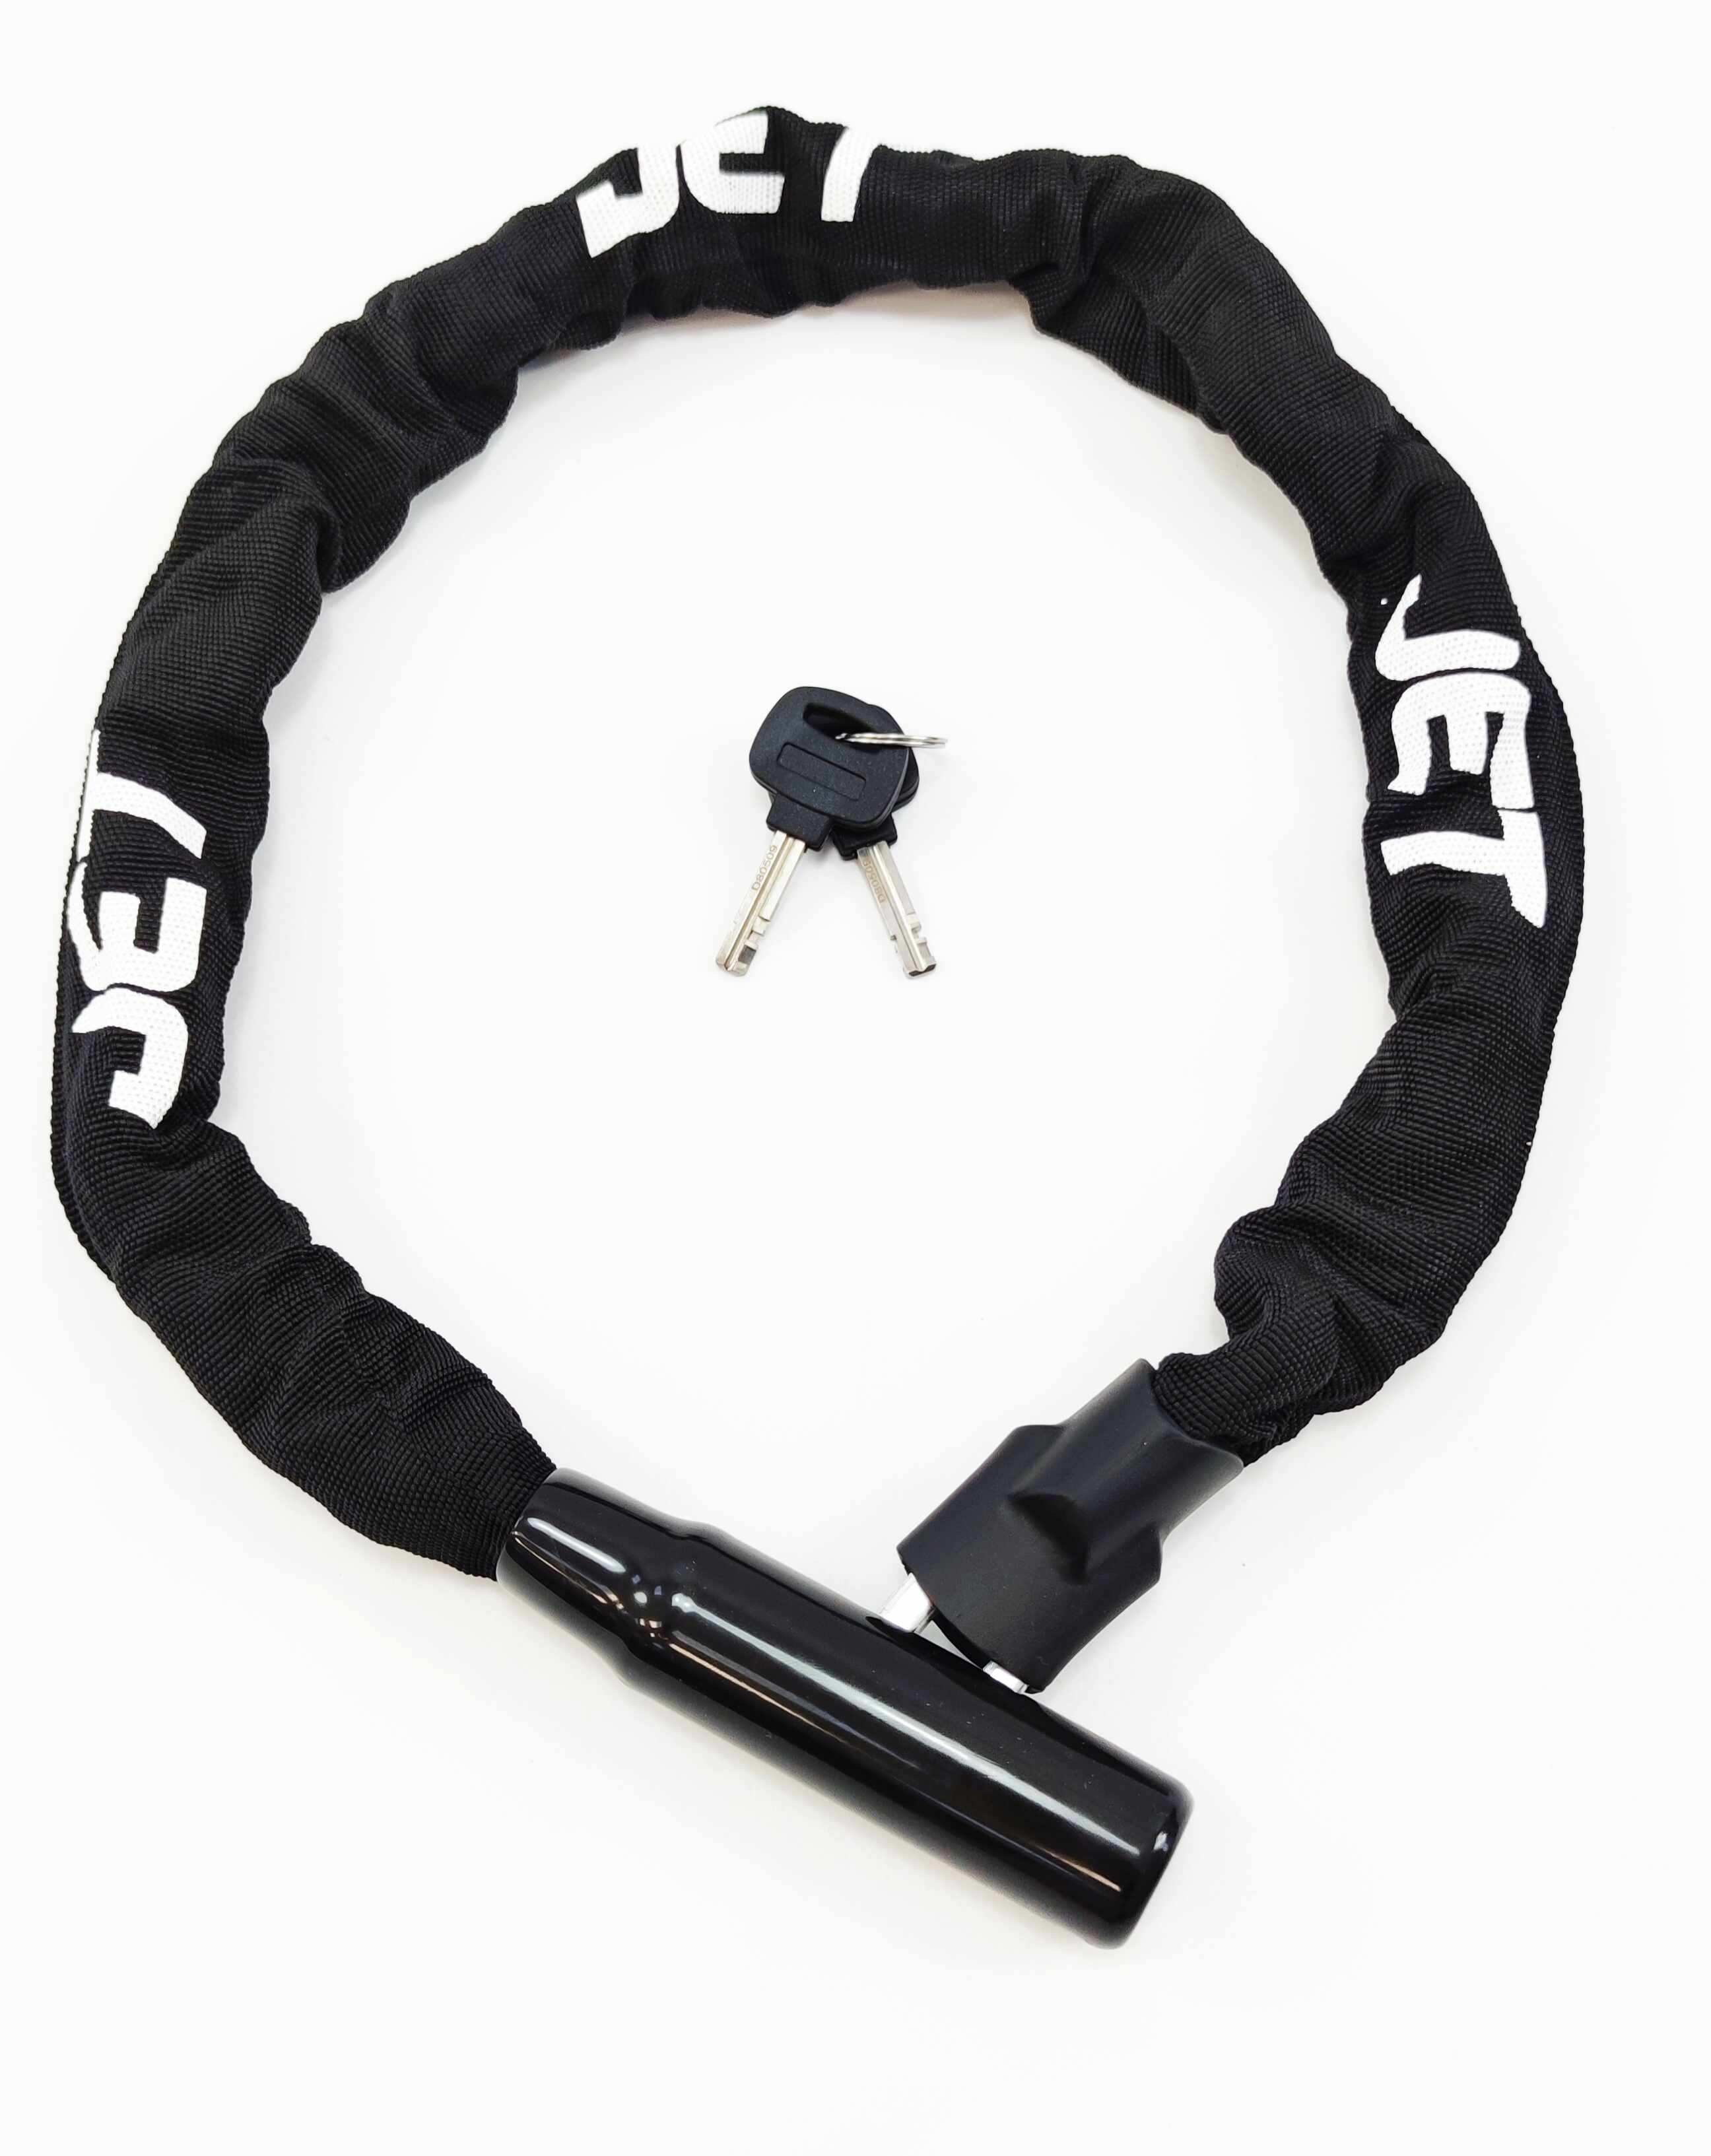 Antifurt cu cheie JET LOCK TY-771 lant, 8x8x900mm culoare negru